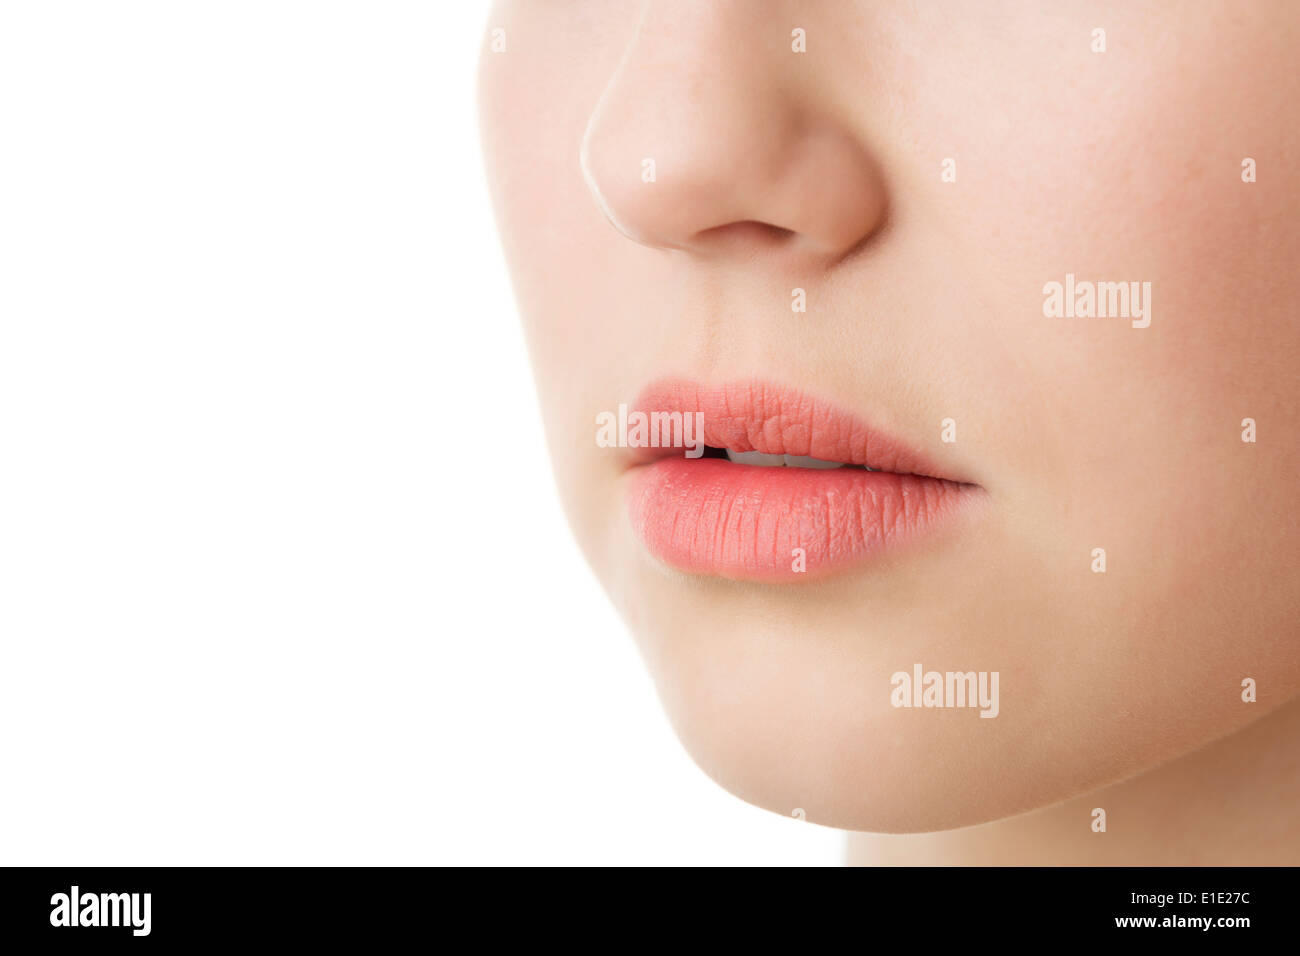 Un gros plan du visage d'une femme avec les lèvres et le nez Banque D'Images